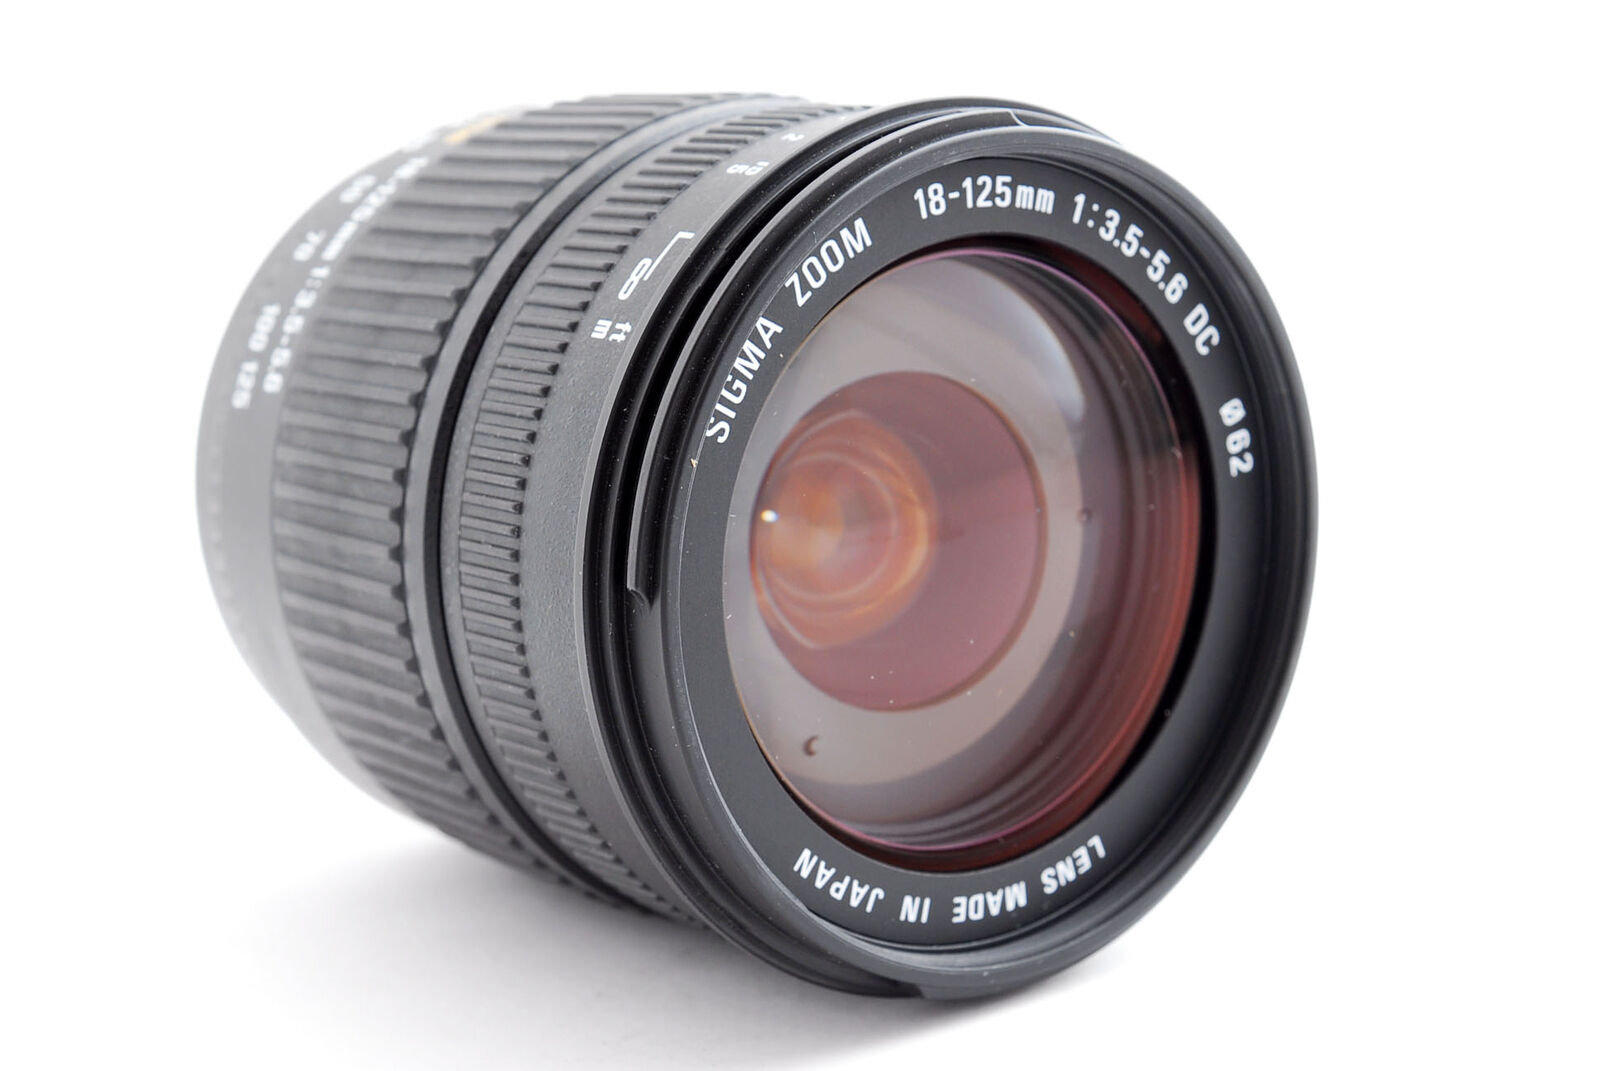 Sigma DC 18-125mm f/3.5-5.6 DC AF Lens for sale online | eBay